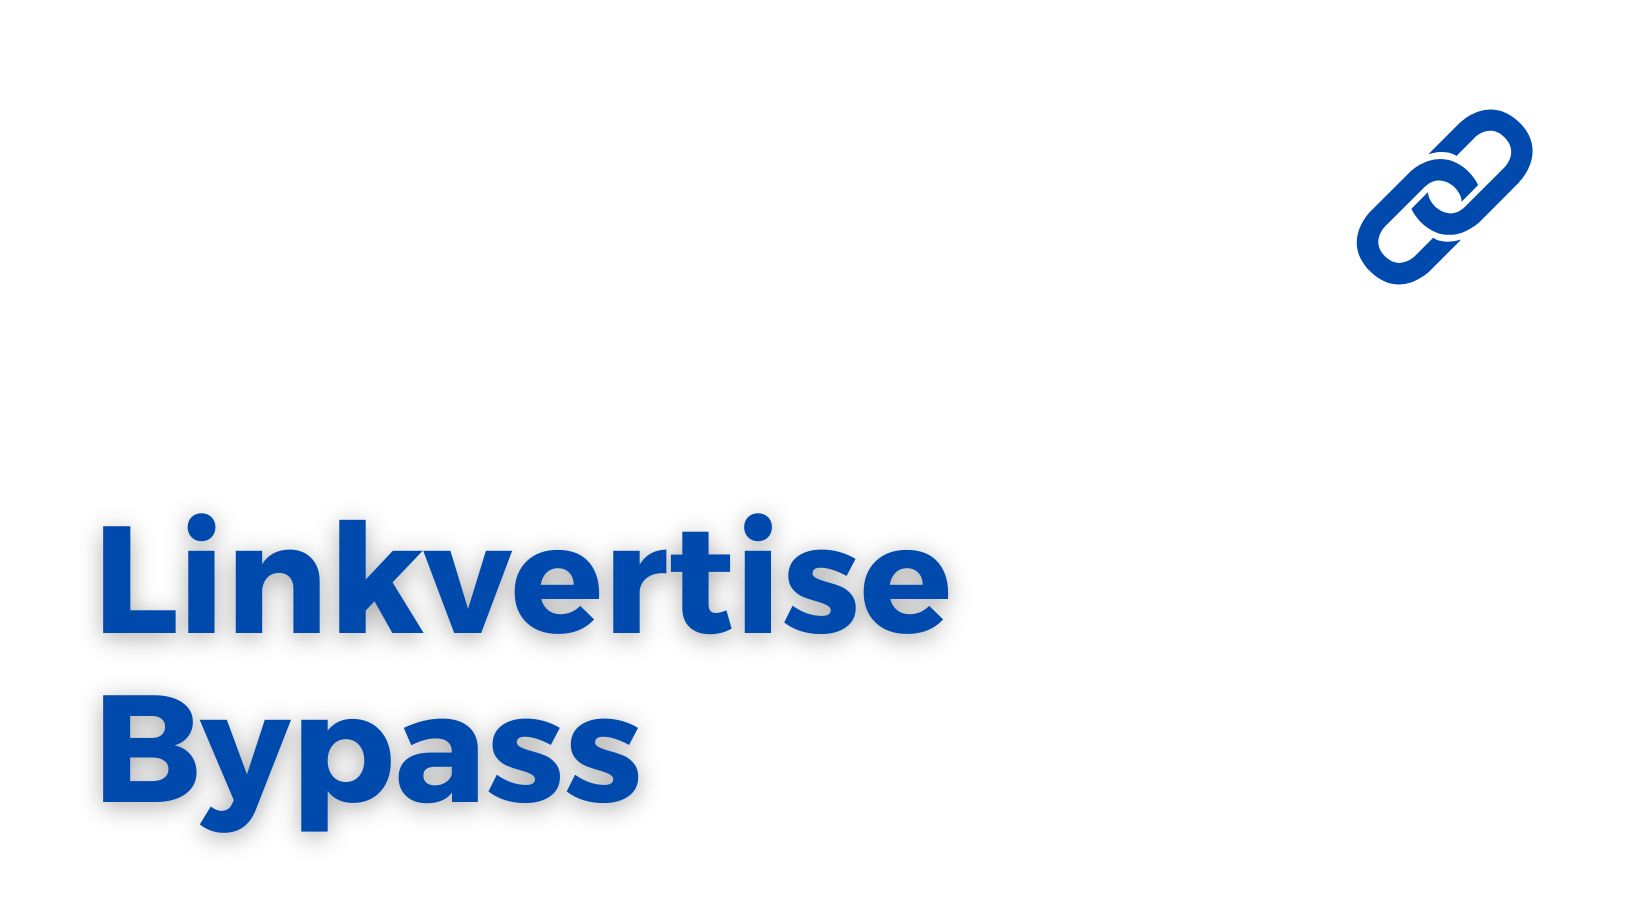 Linkvertise Bypass